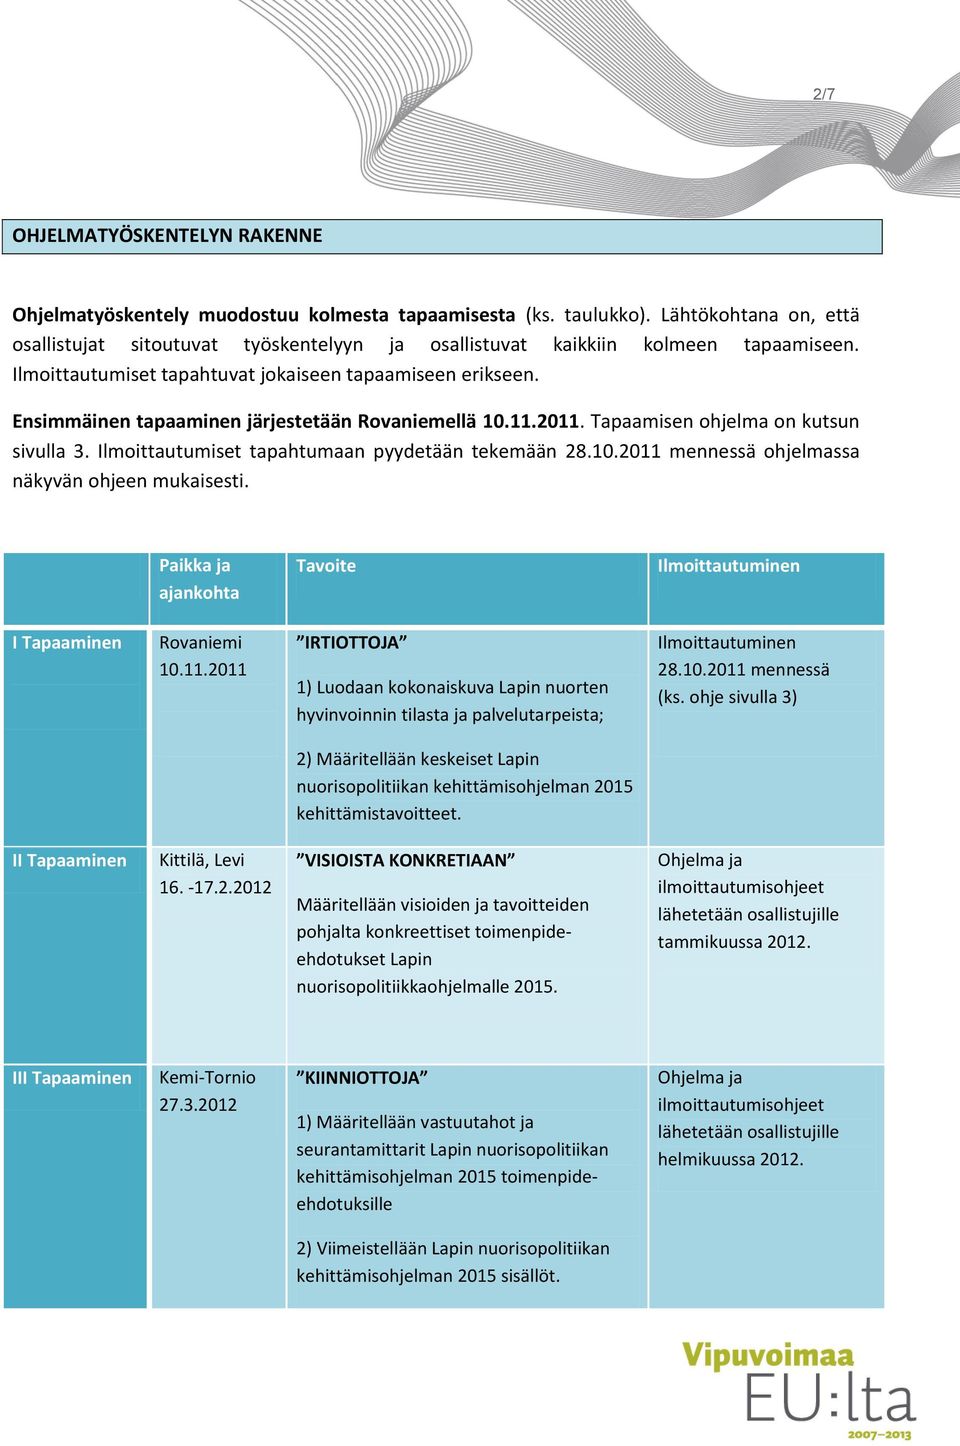 Ensimmäinen tapaaminen järjestetään Rovaniemellä 10.11.2011. Tapaamisen ohjelma on kutsun sivulla 3. Ilmoittautumiset tapahtumaan pyydetään tekemään 28.10.2011 mennessä ohjelmassa näkyvän ohjeen mukaisesti.